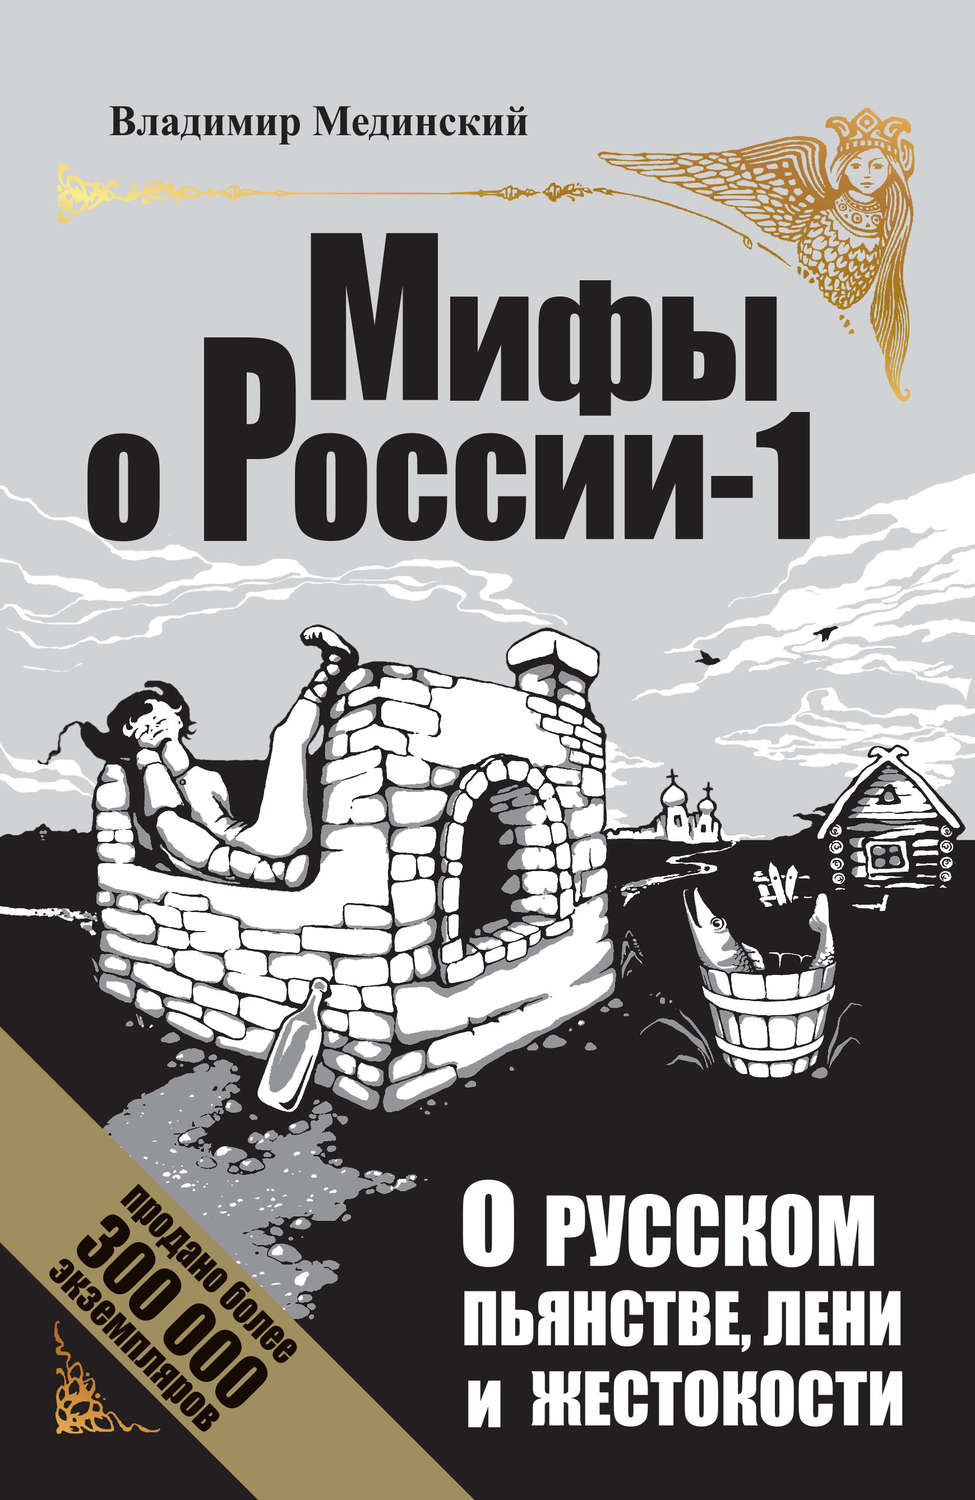 Книги мифы о россии мединский скачать